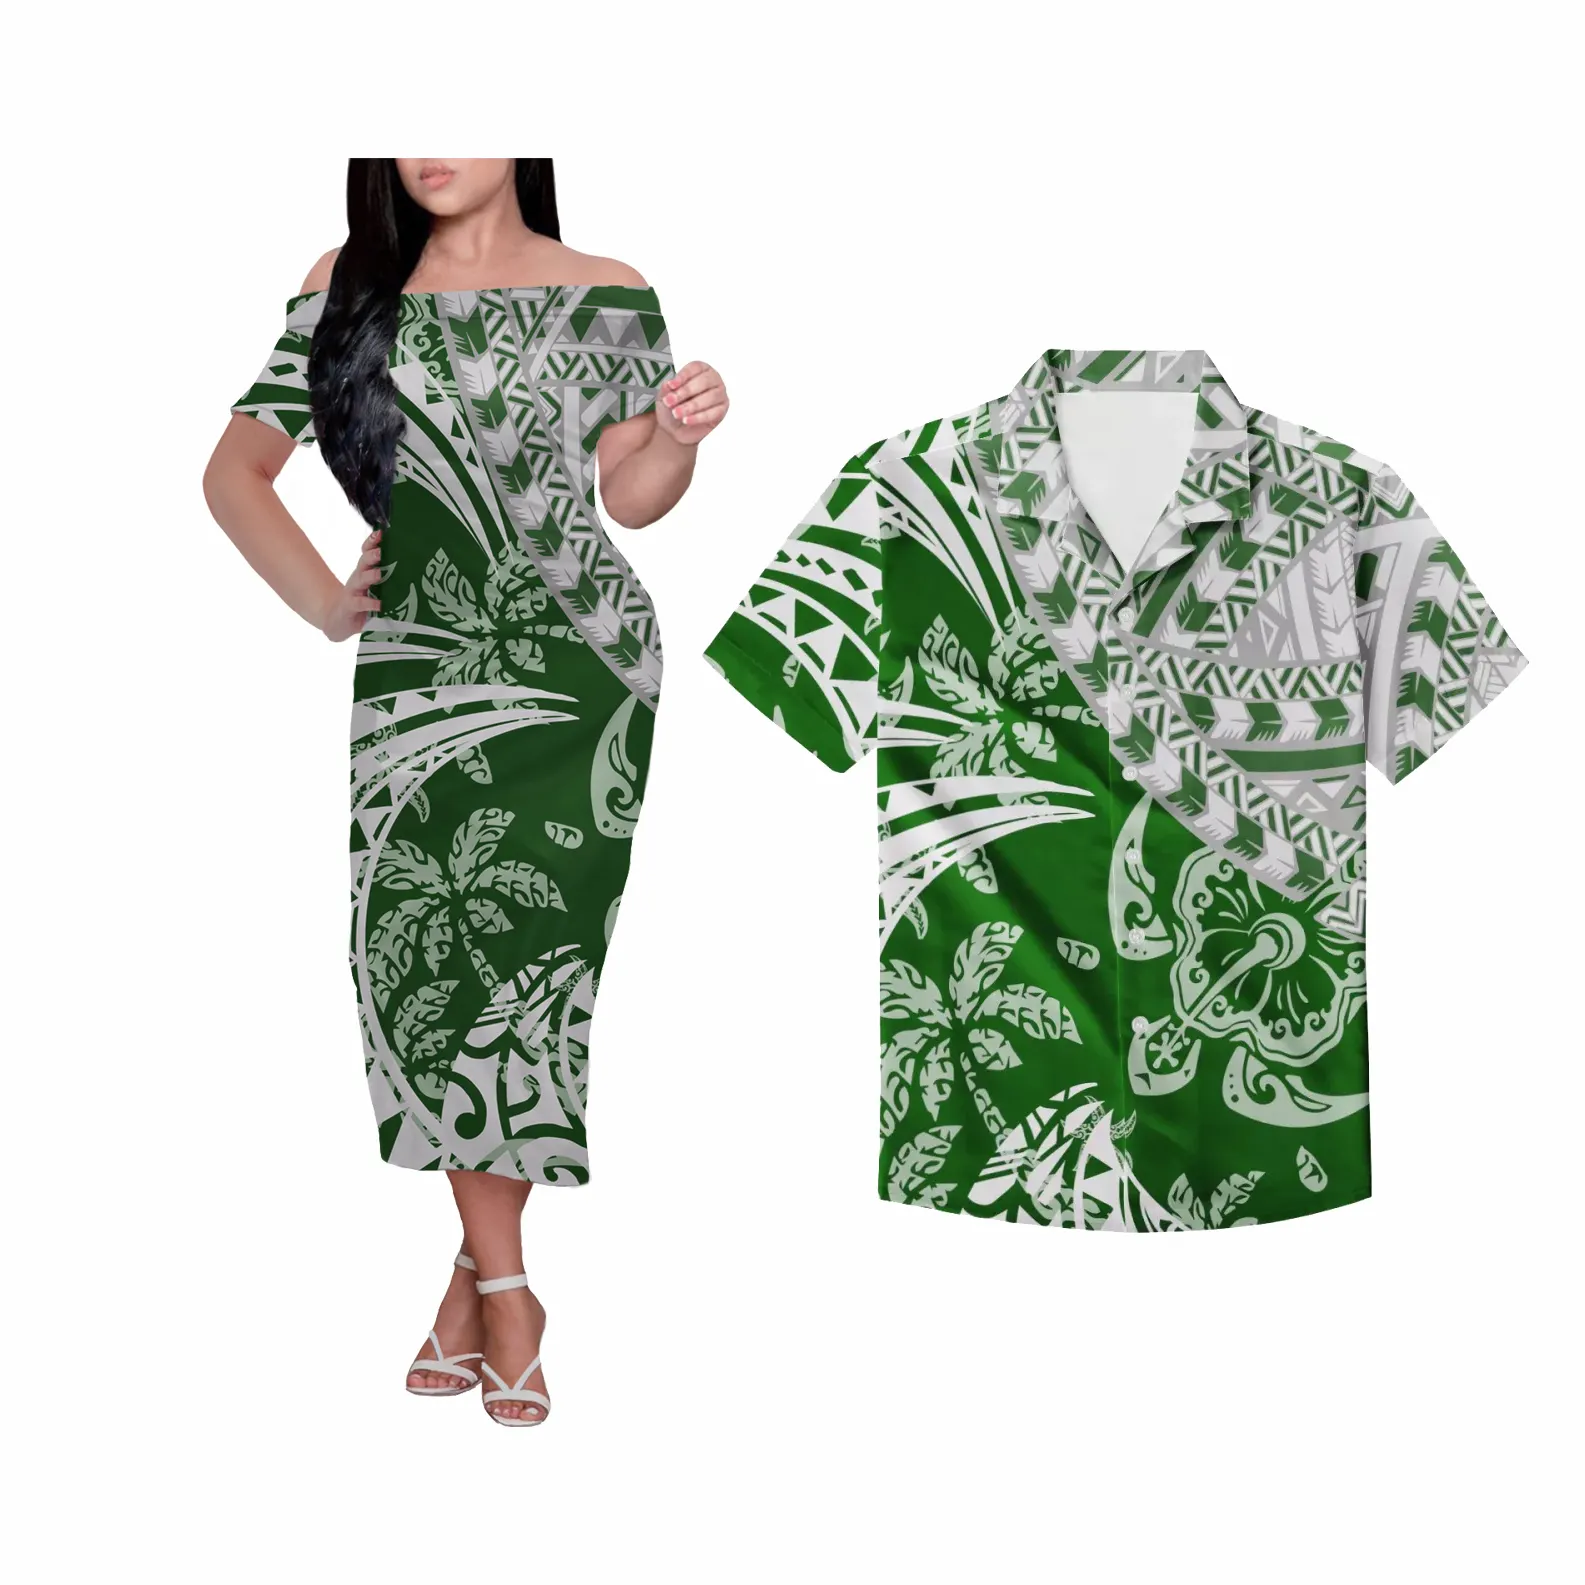 Hawaïenne tortue Coco — robe Tribal décontractée, manches courtes, pour hommes et femmes, costume personnalisé, vêtement confortable pour amoureux